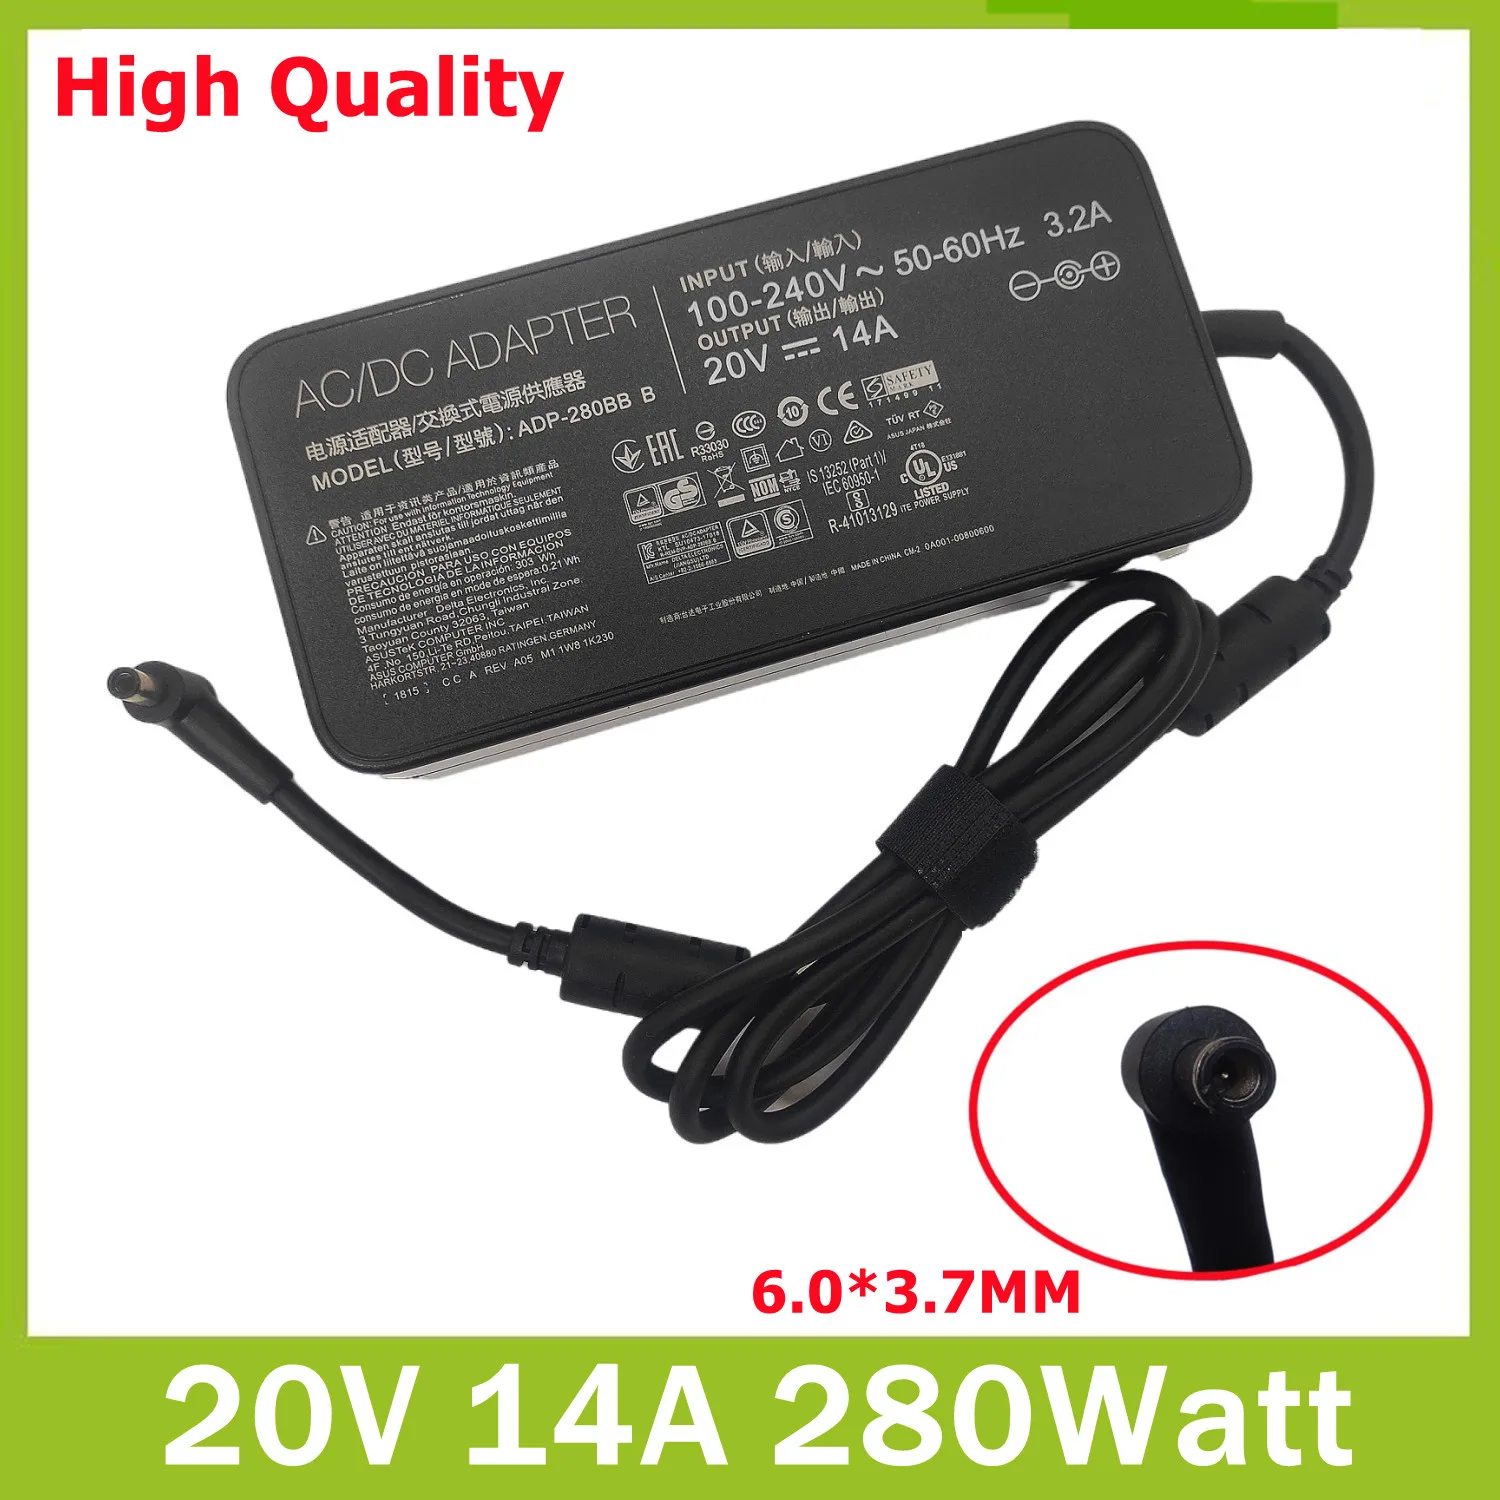 20V 14A 280W 6.0x3.7MM ADP-280BB B Charger AC Adapter For PG35V G703GI GX701 ROG G703GX G703GS GX703HS Laptop Power Supply